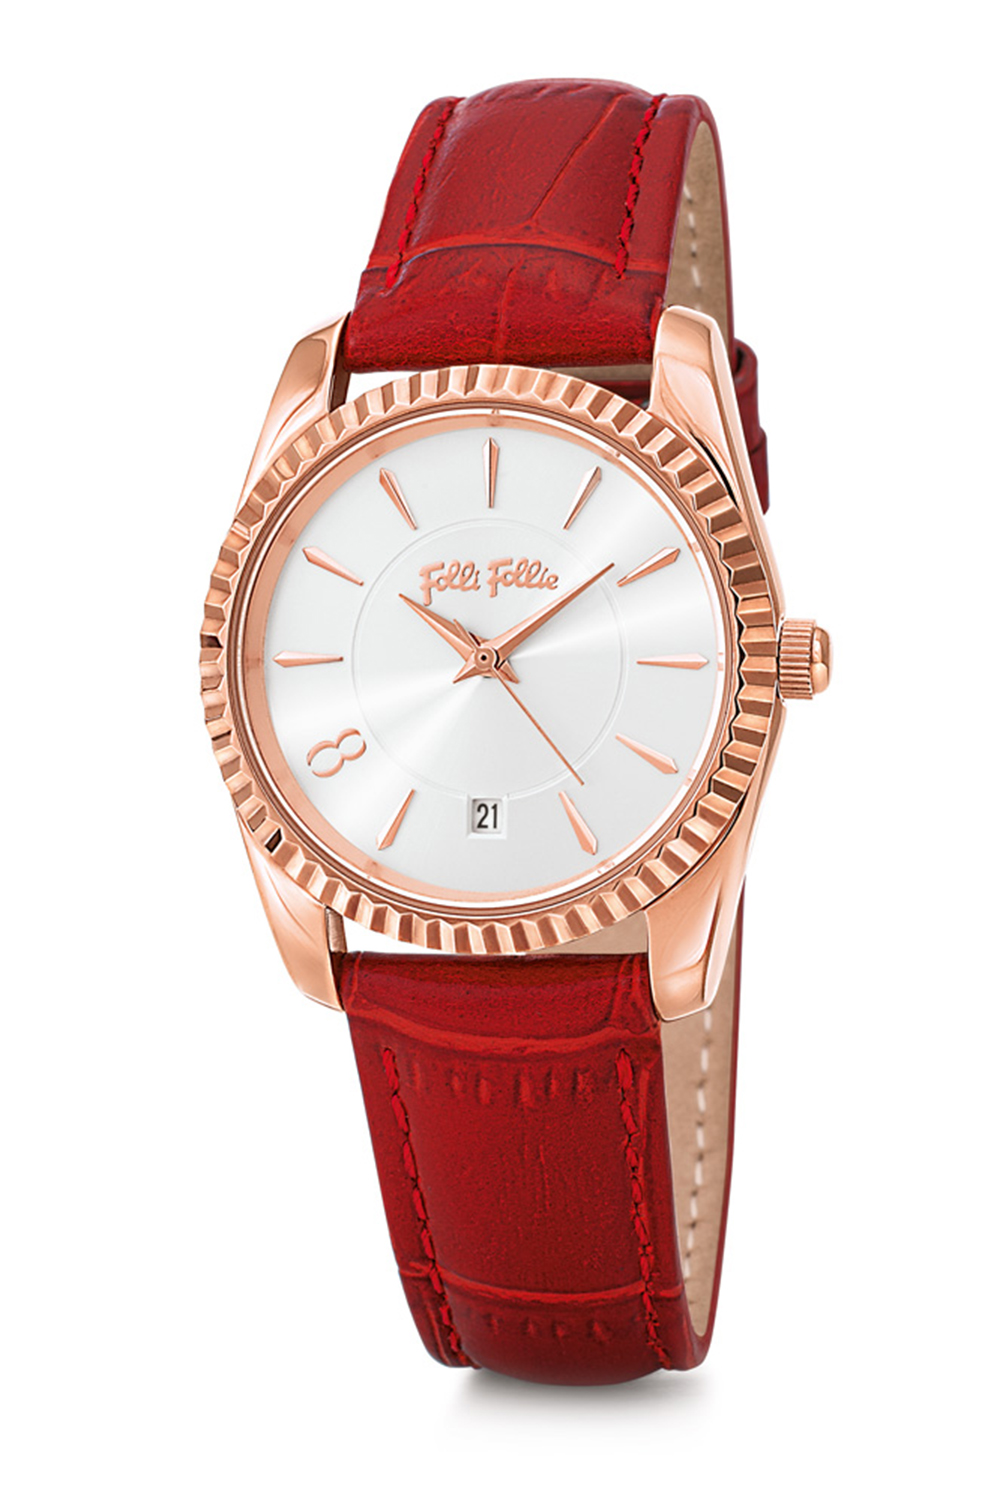 FOLLI FOLLIE – Γυναικείο ρολόι με δερμάτινο λουράκι FOLLI FOLLIE CHRONOS TALES κόκκινο WF18R042SDS-RE